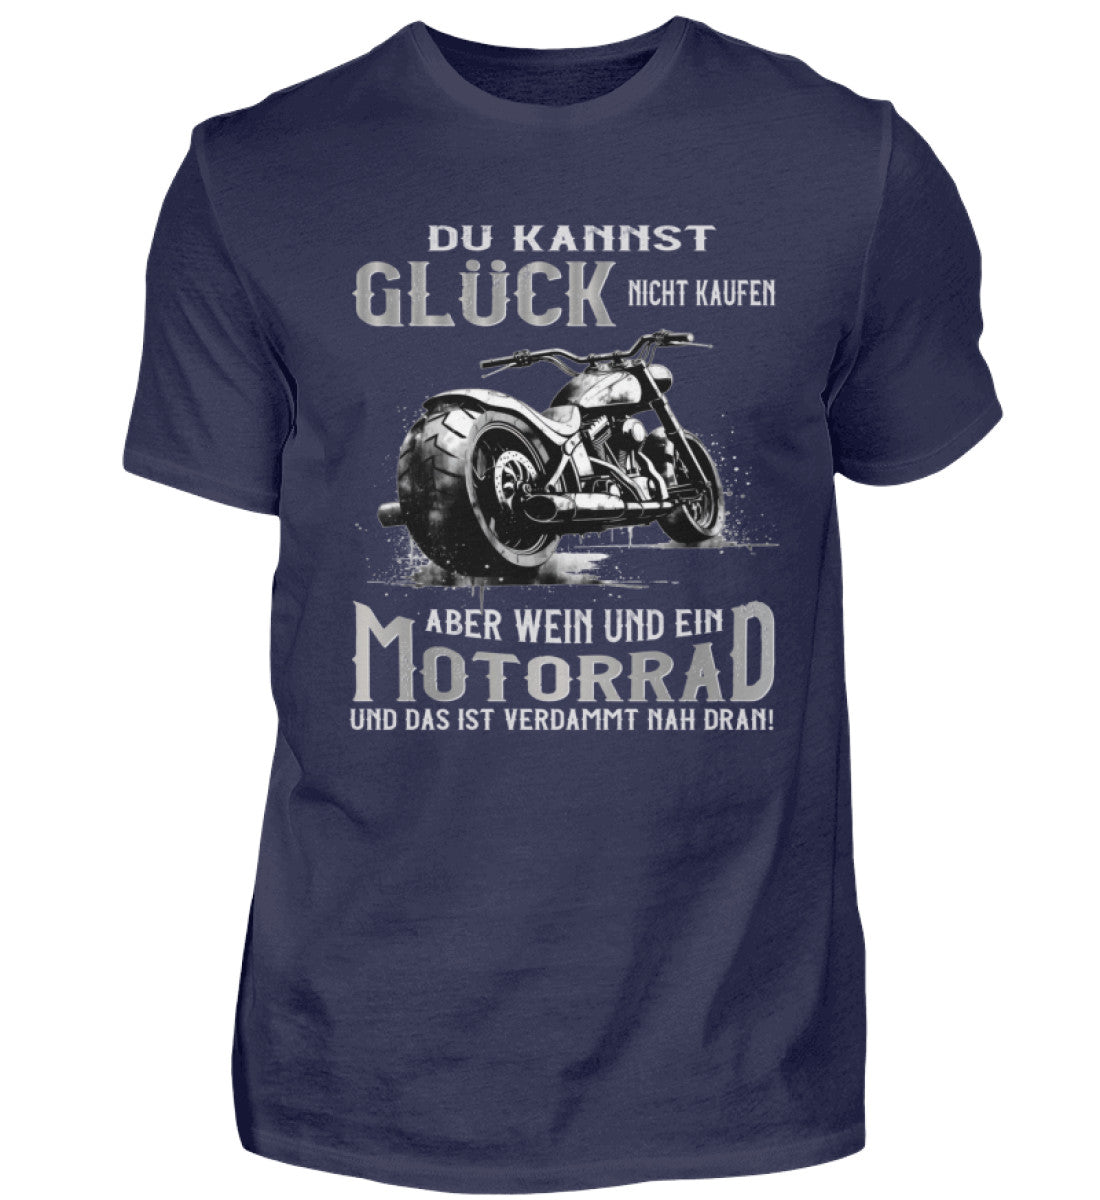 Ein Biker T-Shirt für Motorradfahrer von Wingbikers mit dem Aufdruck, Du kannst Glück nicht kaufen, aber Wein und ein Motorrad und das ist verdammt nah dran! - in navy blau.